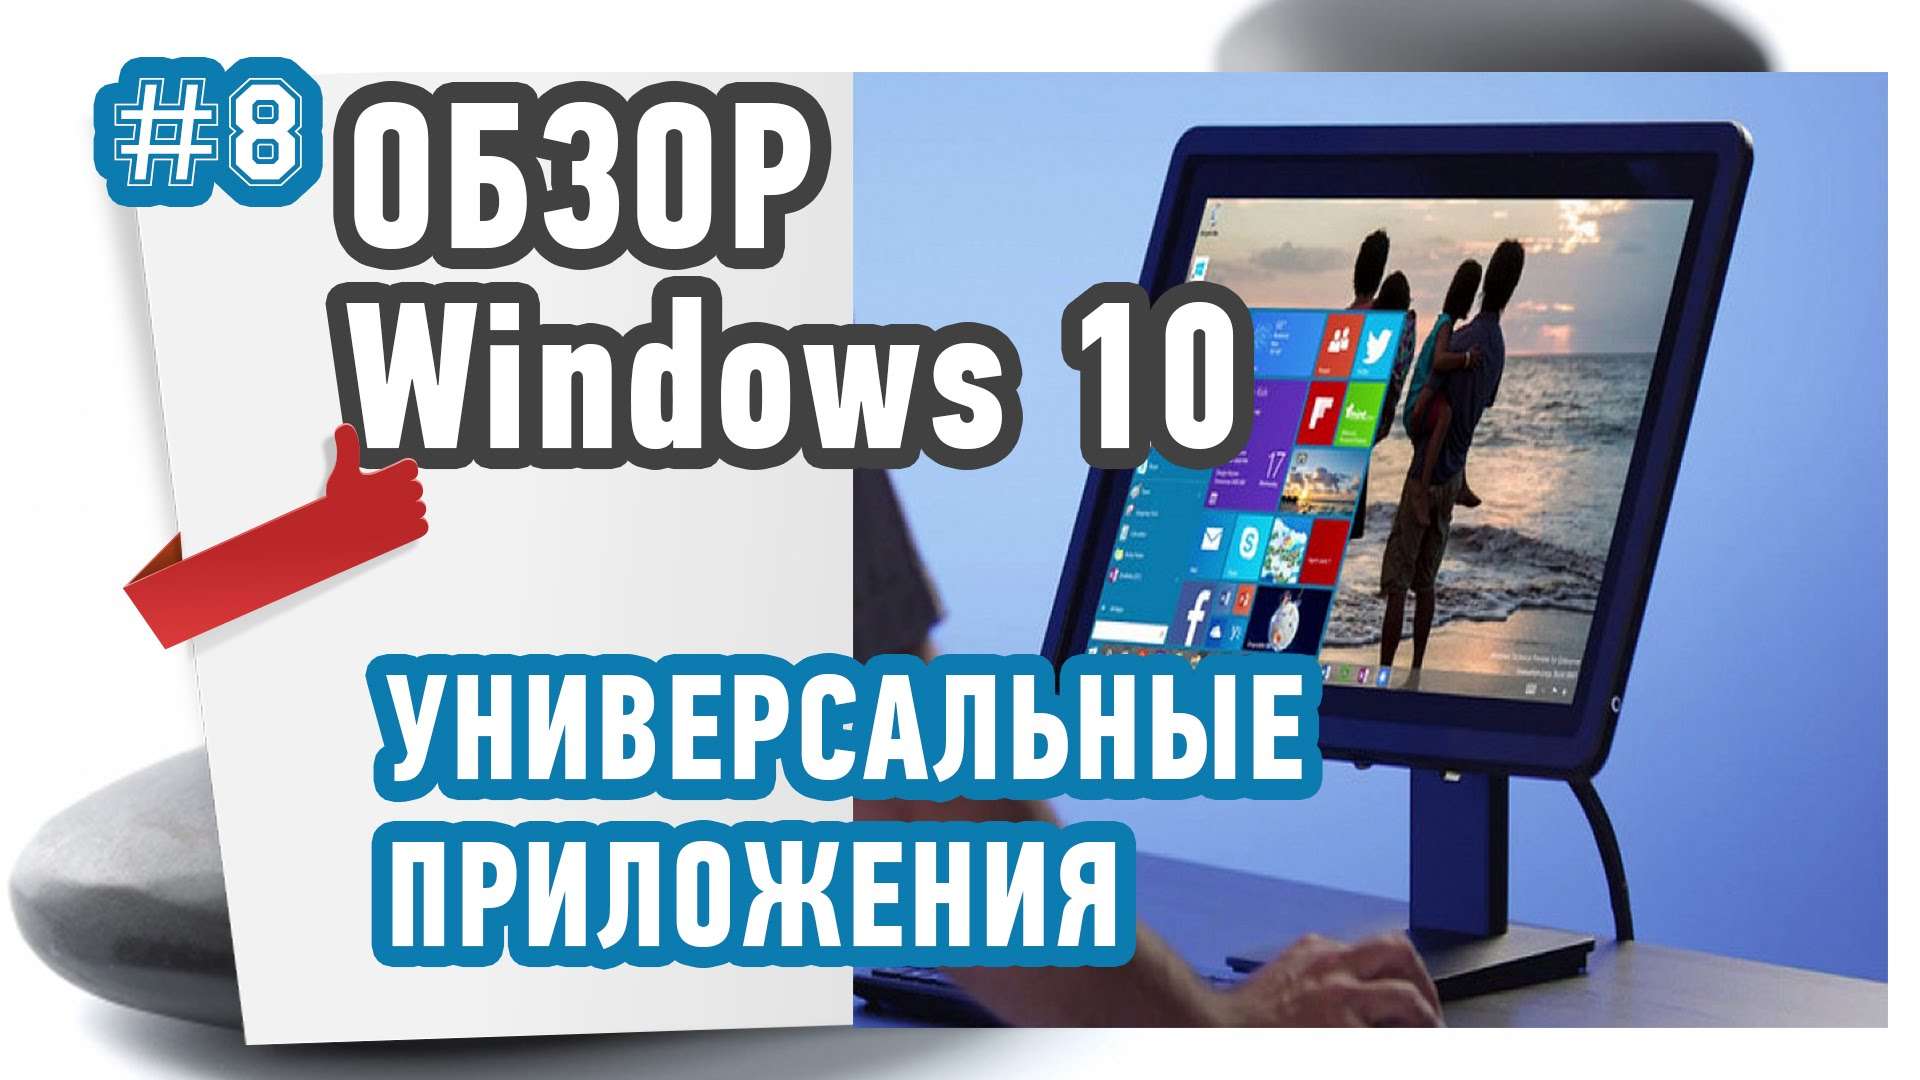 Универсальные приложения в Windows 10